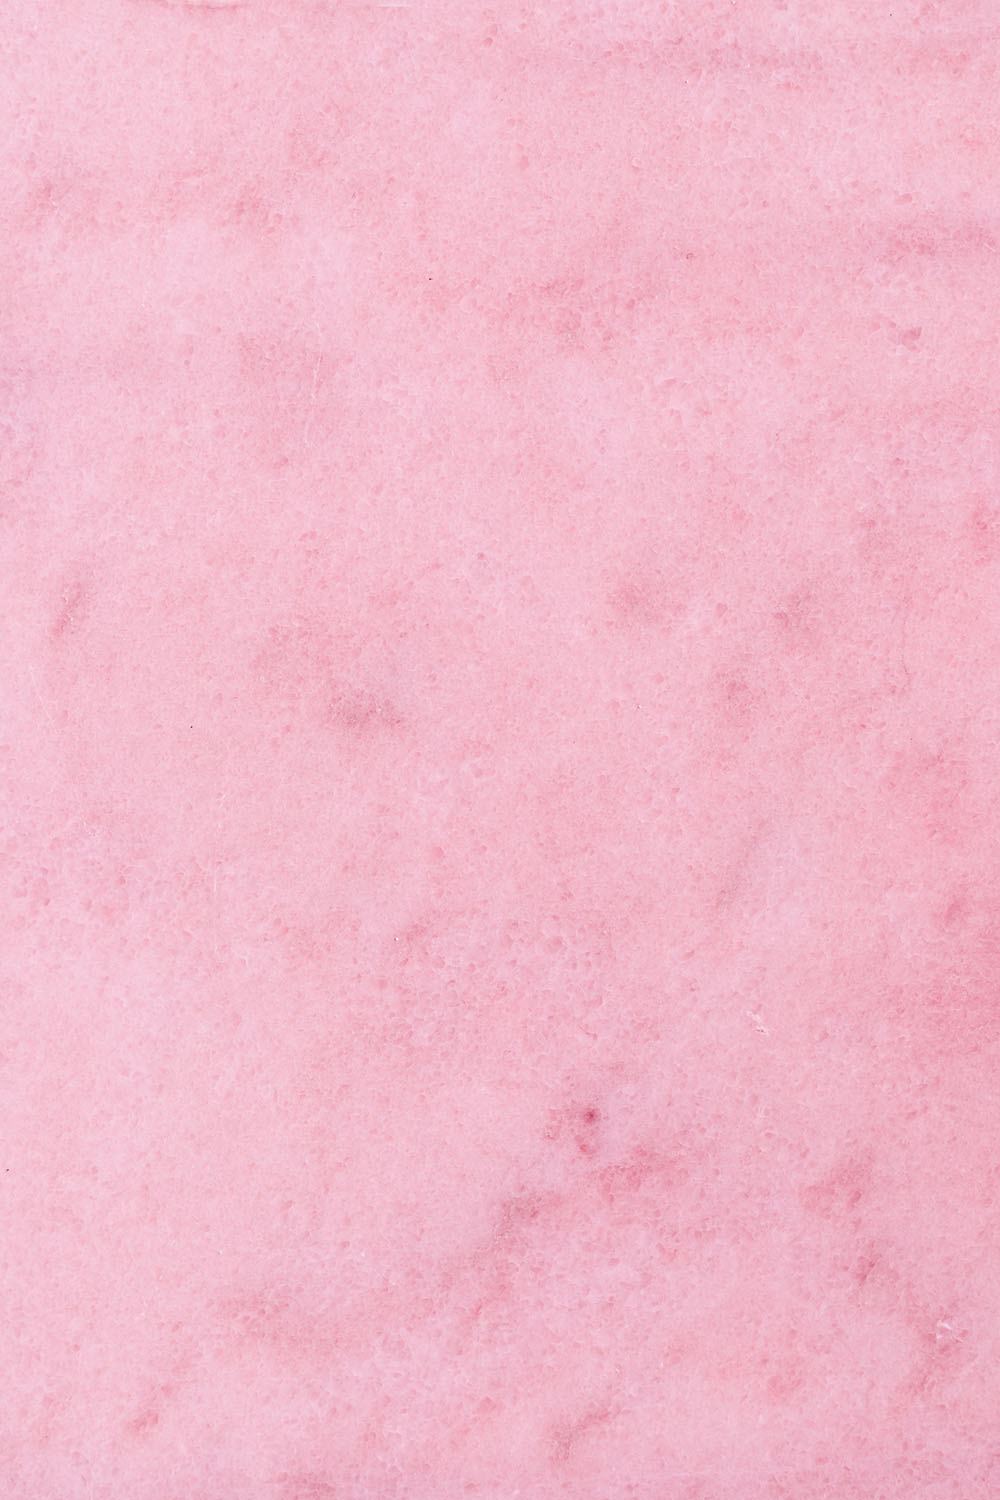 Roze backdrop ‘lollypop pink’ met zachte textuur, ideaal voor fotografie